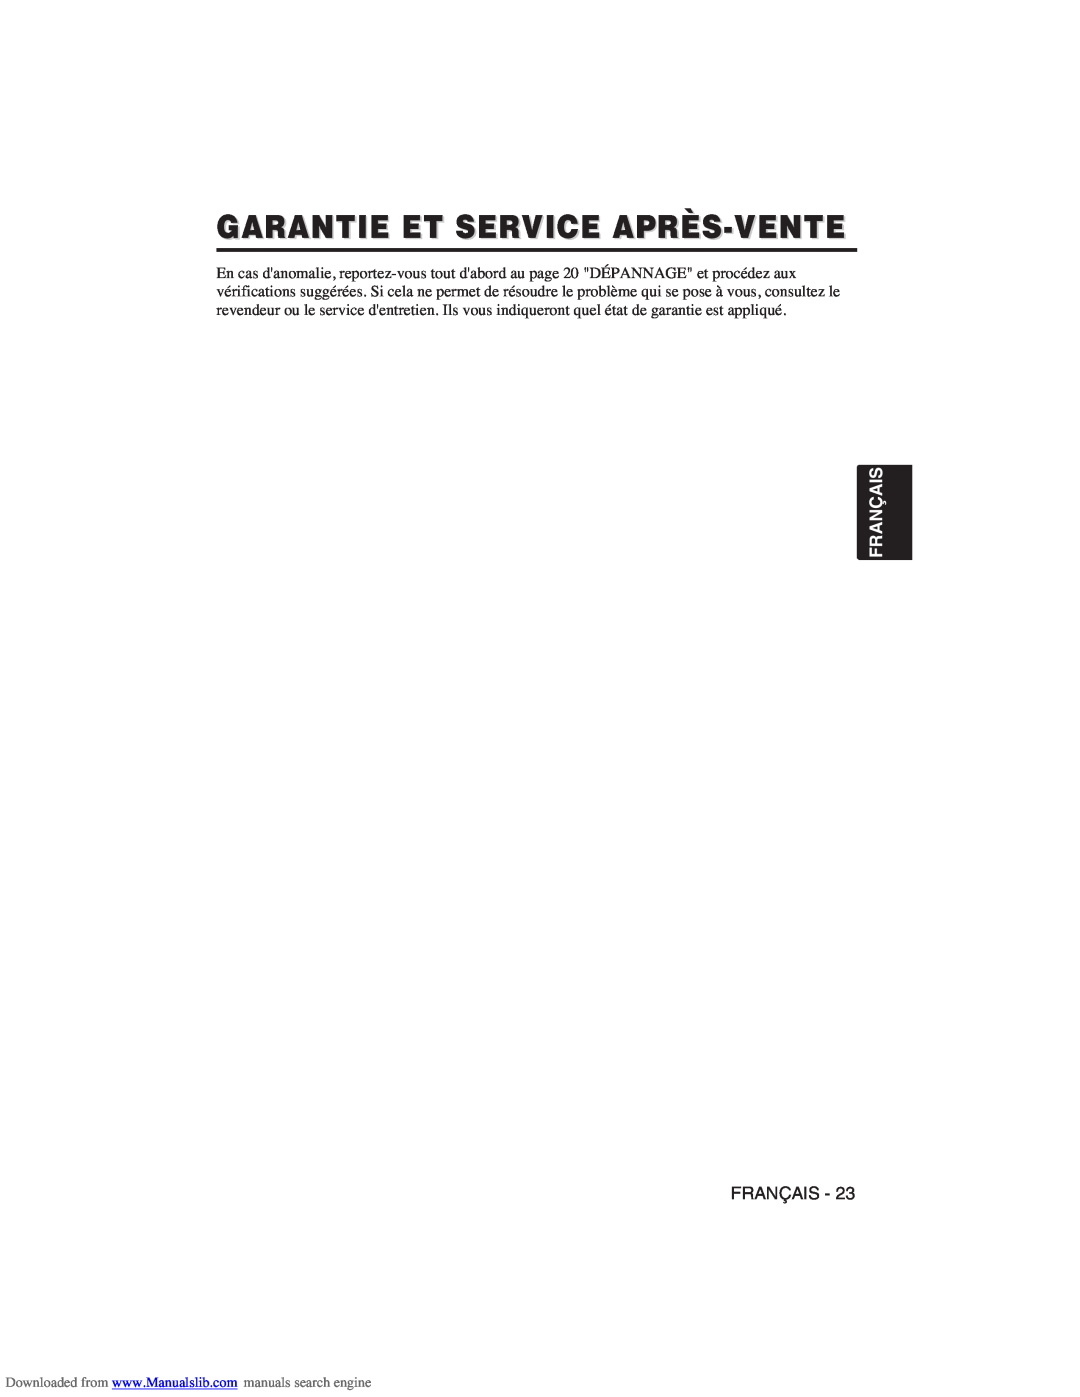 Hitachi CP-X275W user manual Garantie Et Service Après-Vente, Français 